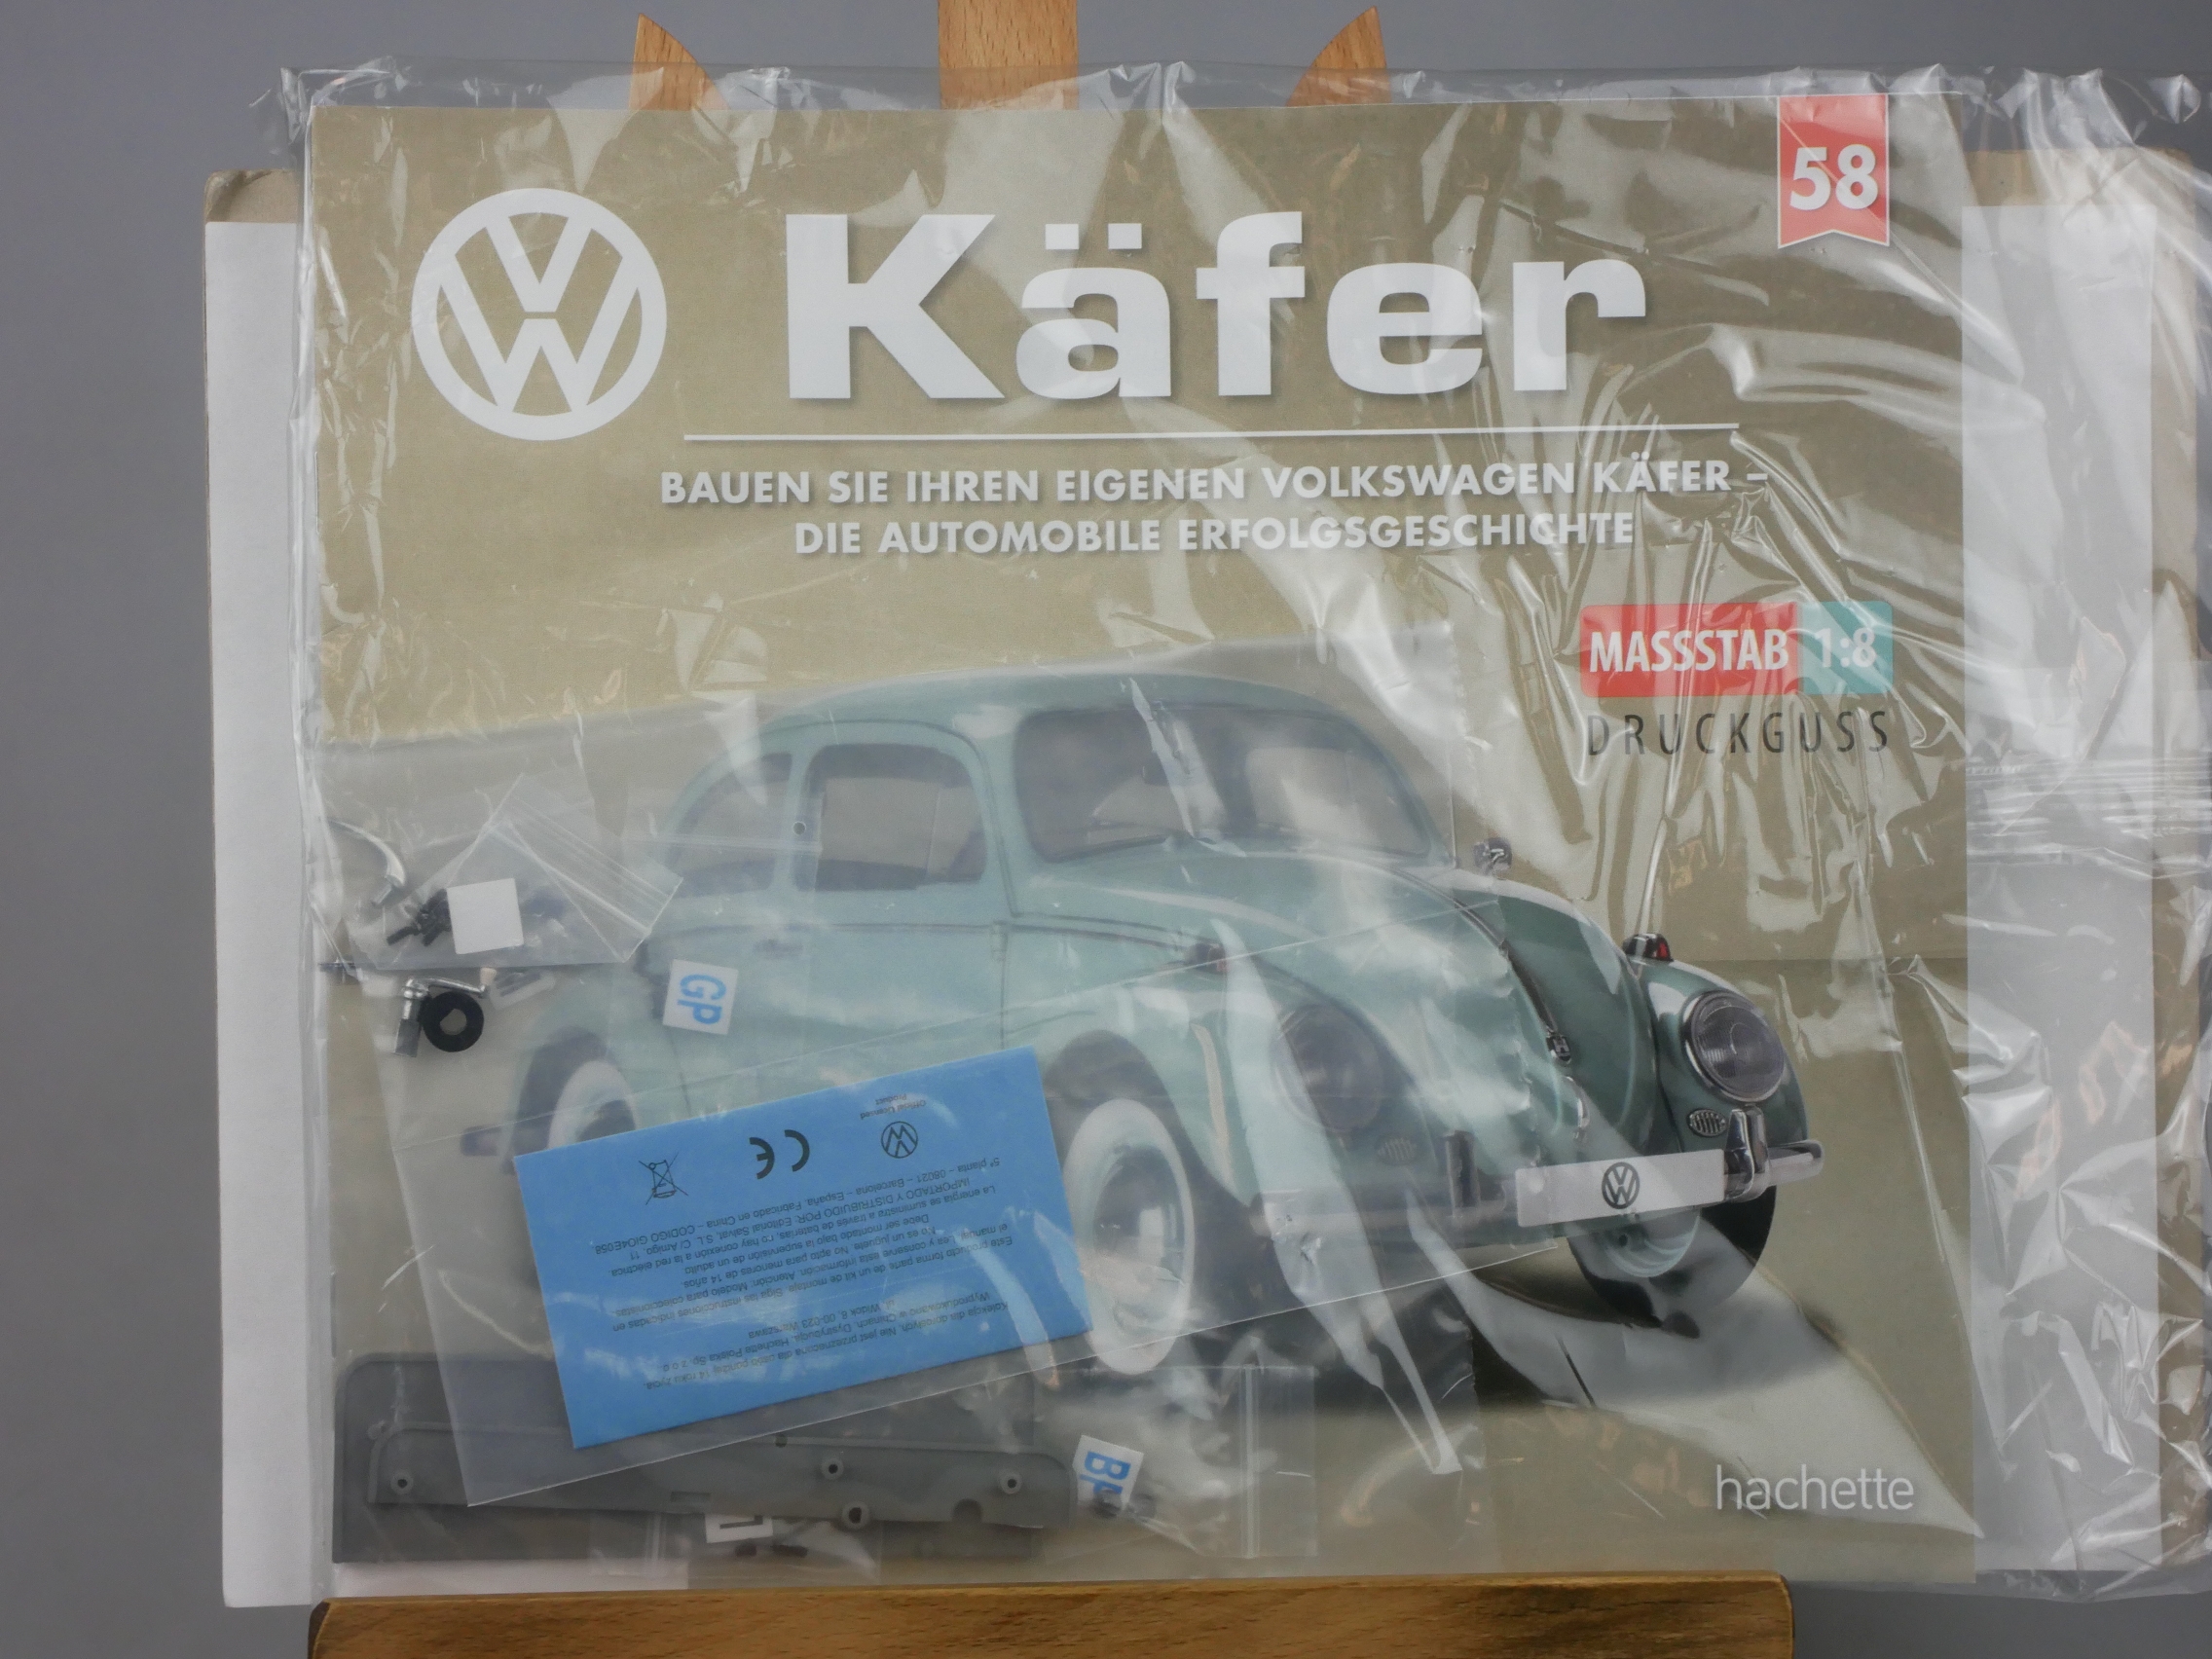  Ausgabe 58 Volkswagen VW Käfer 1/8 Hachette - 126425